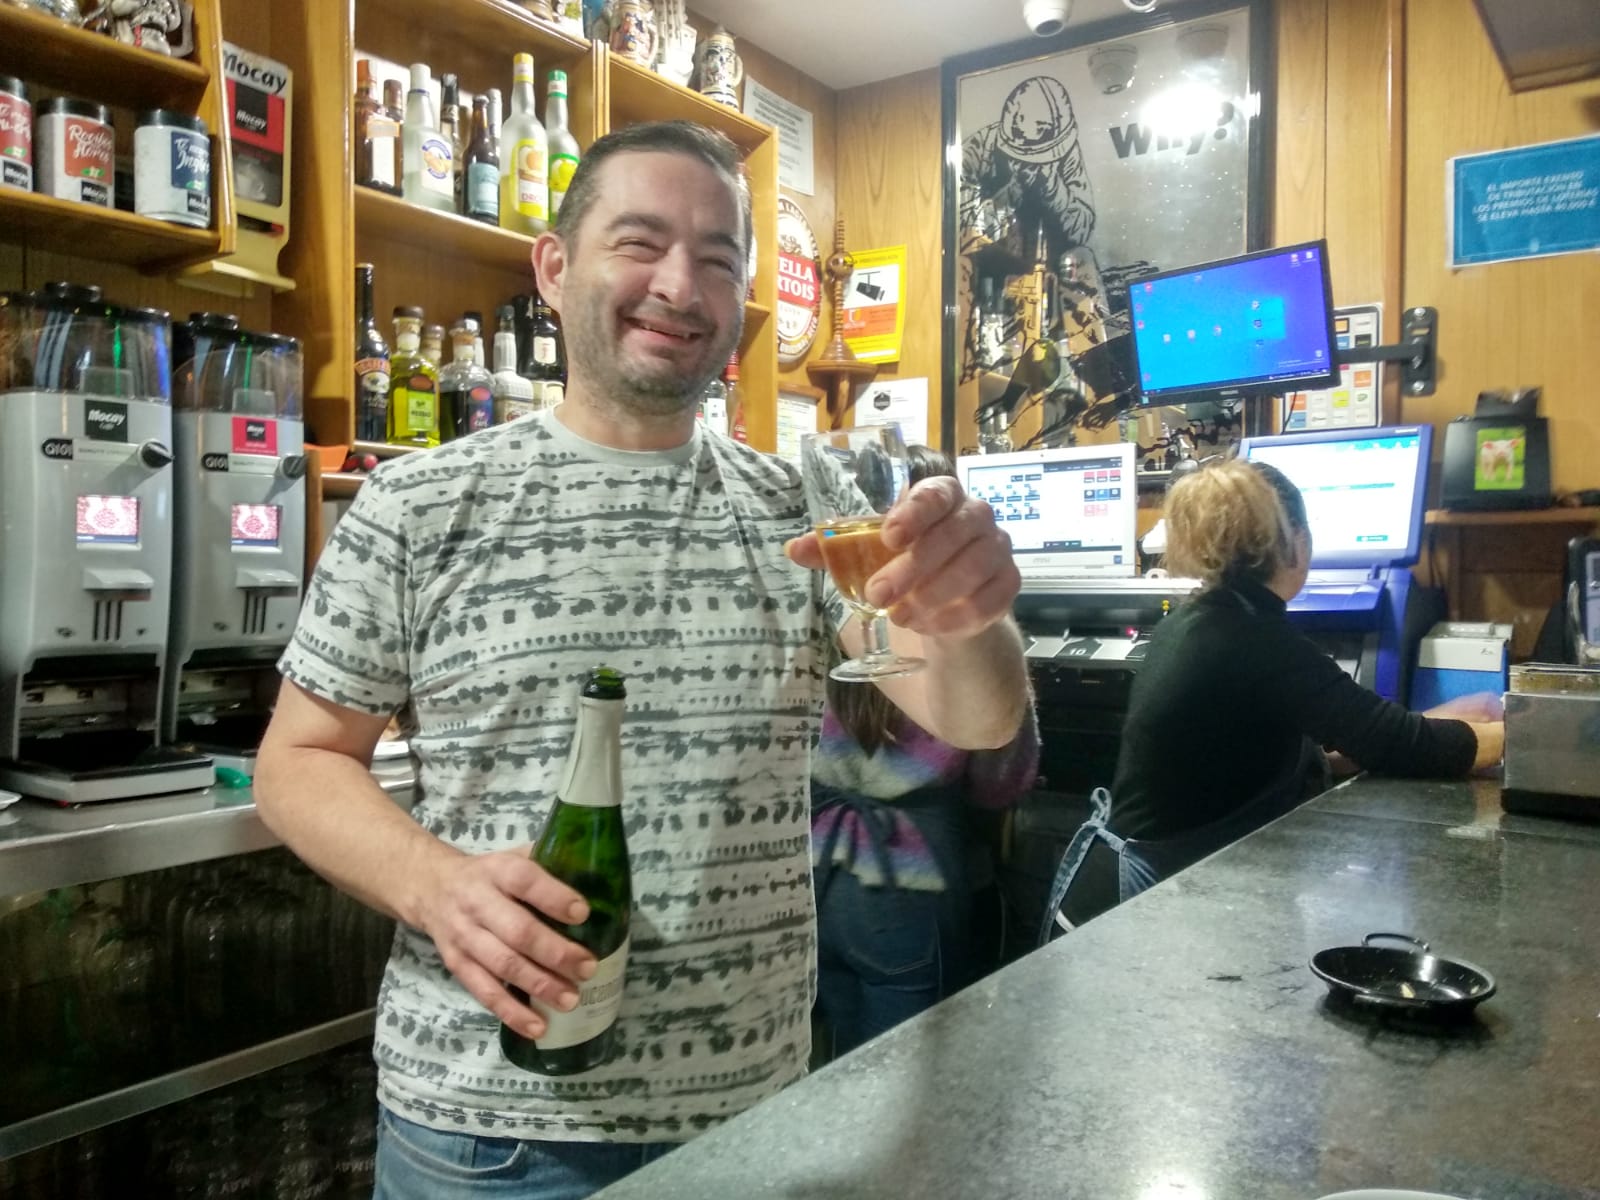 El propietario del bar Moderno celebra el premio repartido, el Gordo de la Navida, desde su establecimiento.